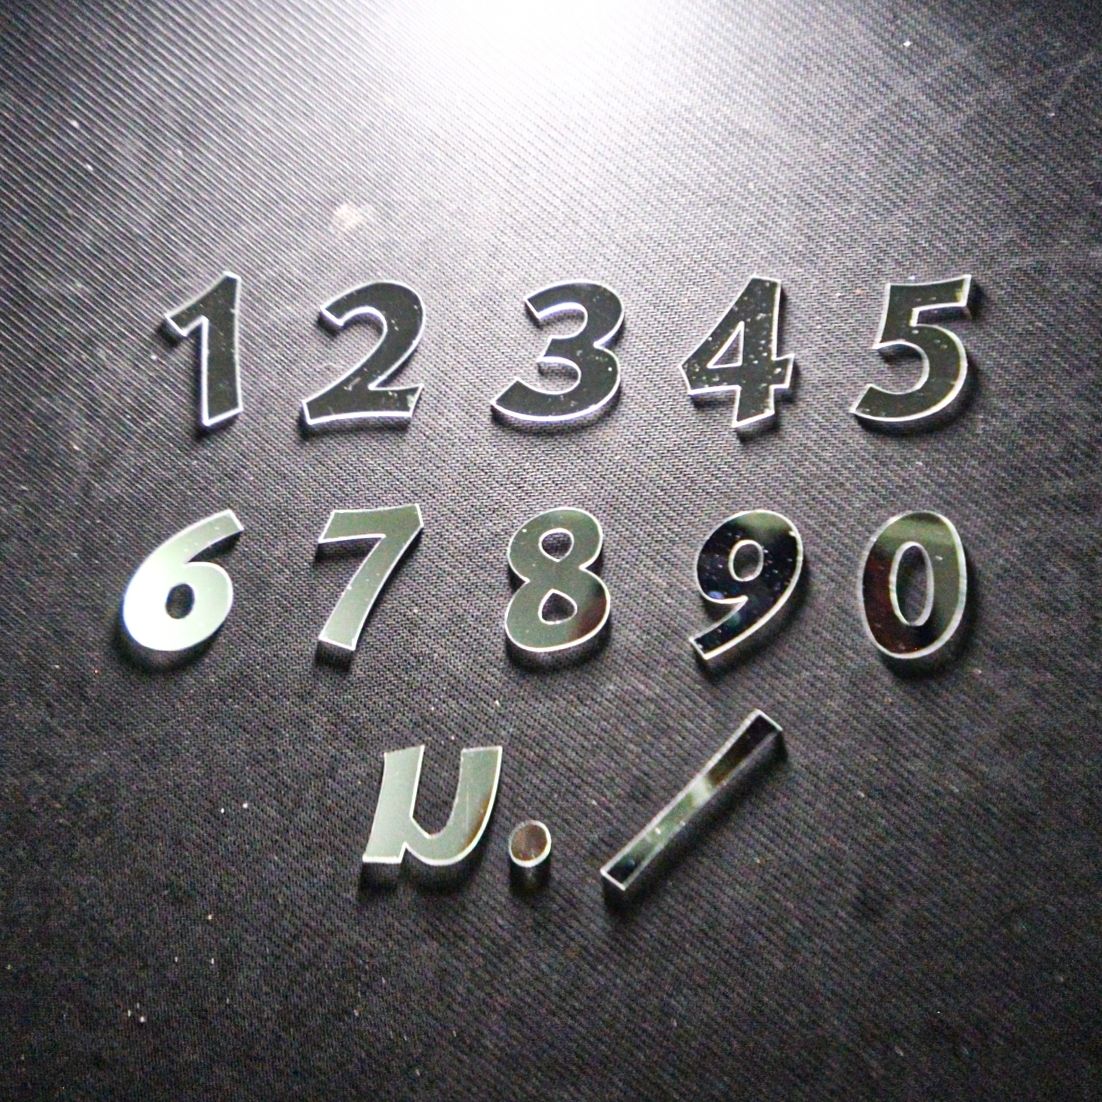 ถูกที่สุด สูง 4 cm. ป้ายบ้านเลขที่ ตัวเลขอะคริลิค ป้ายห้อง ตัวเลข อักษรอะคริลิค สีเงิน มิลเลอร์(เงา) หนา 3mm.